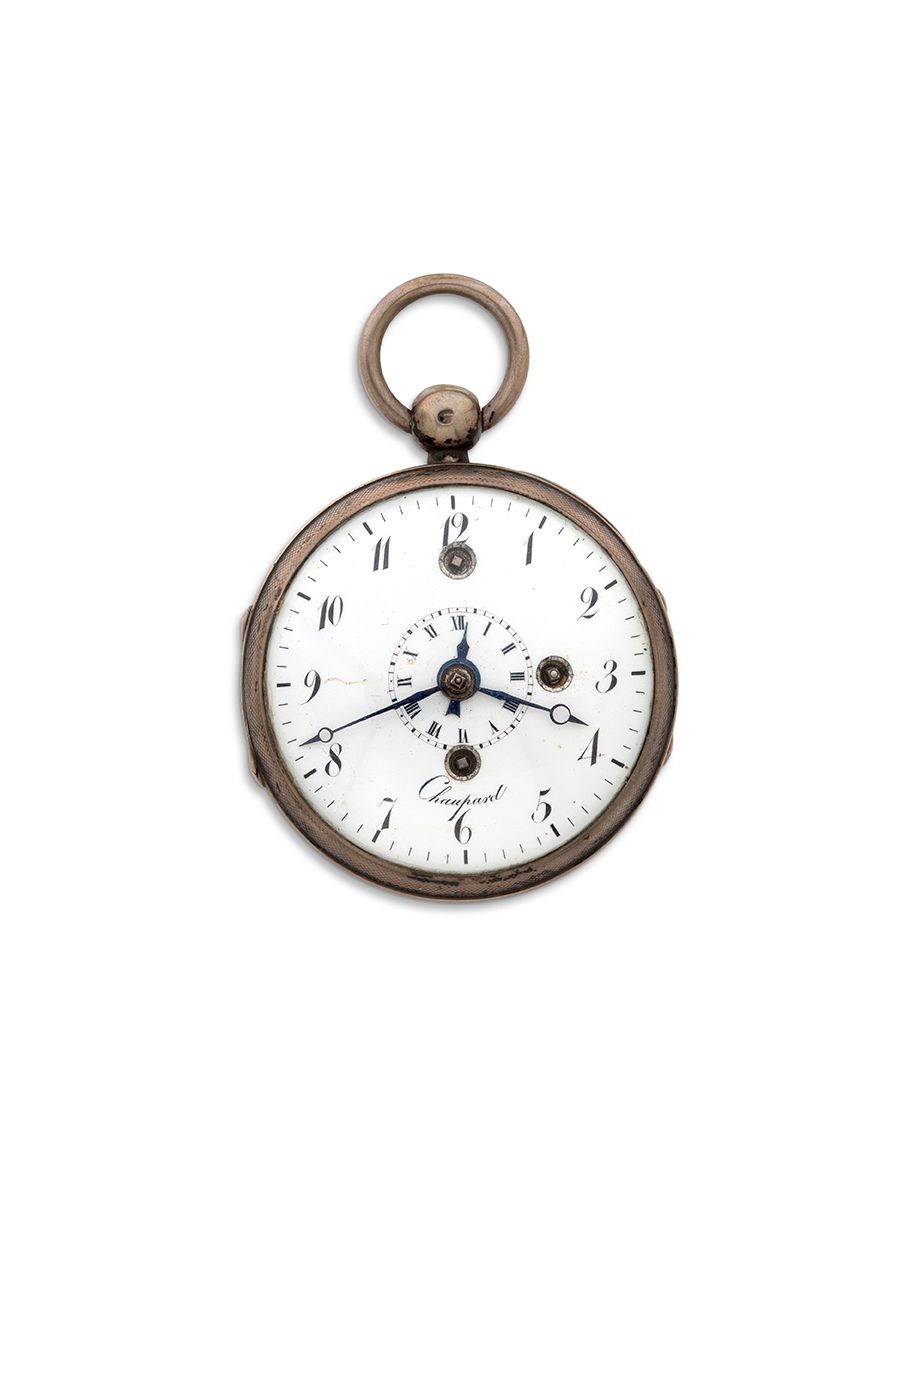 CHAUPARD, Paris Silberne Uhr mit Schlagwerk Weckfunktion
Gehäuse auf Doppelschar&hellip;